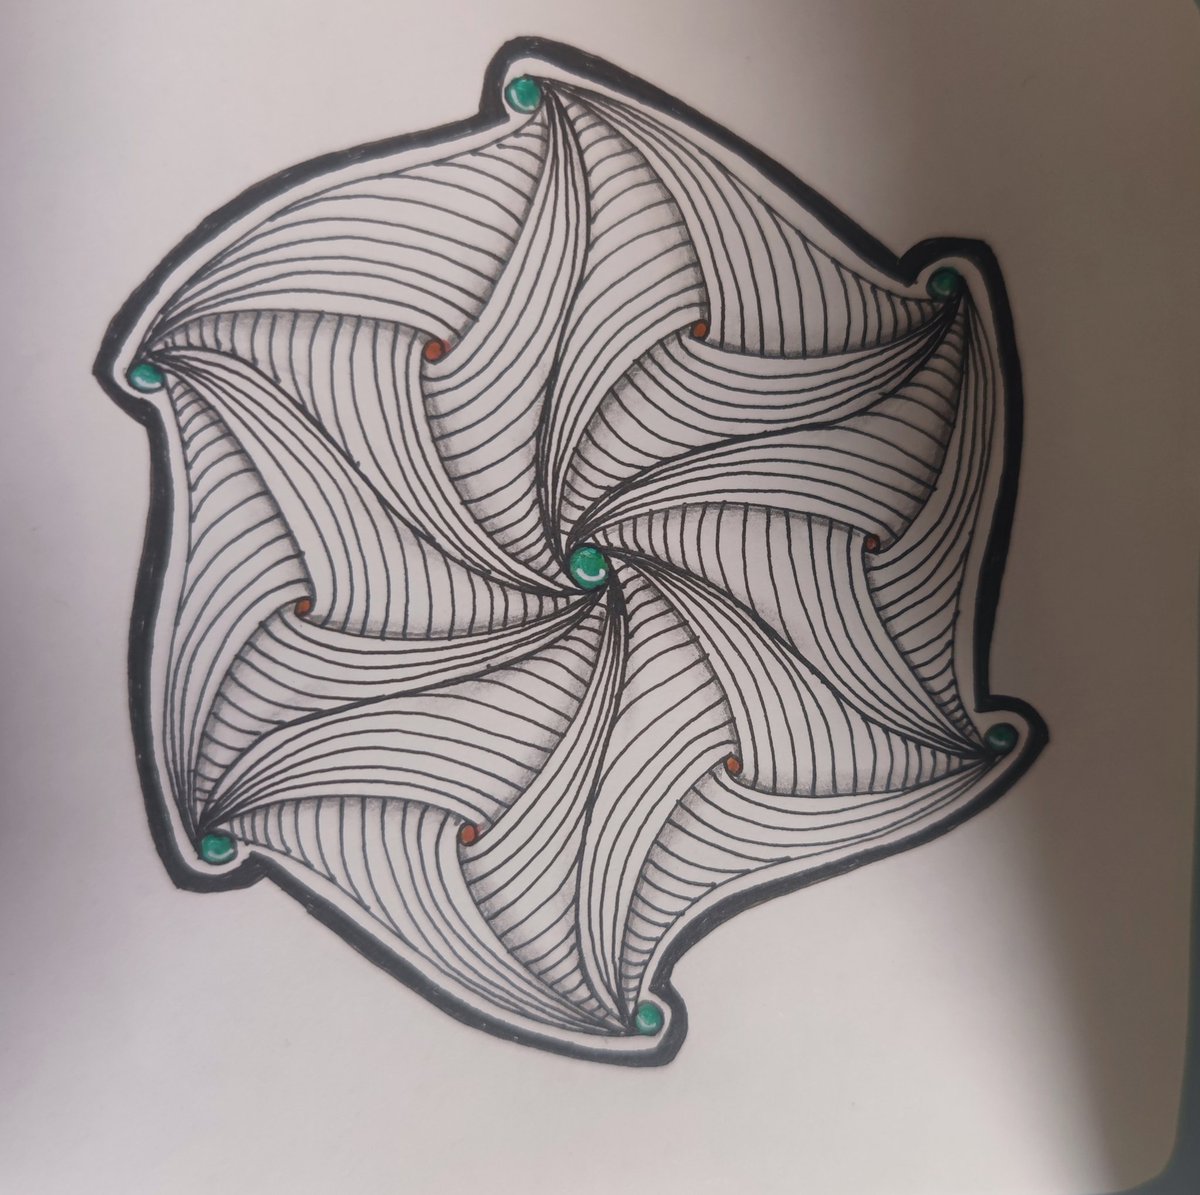 Zentangle challenge - 1      #zentangle #linedraw #creativedrawing